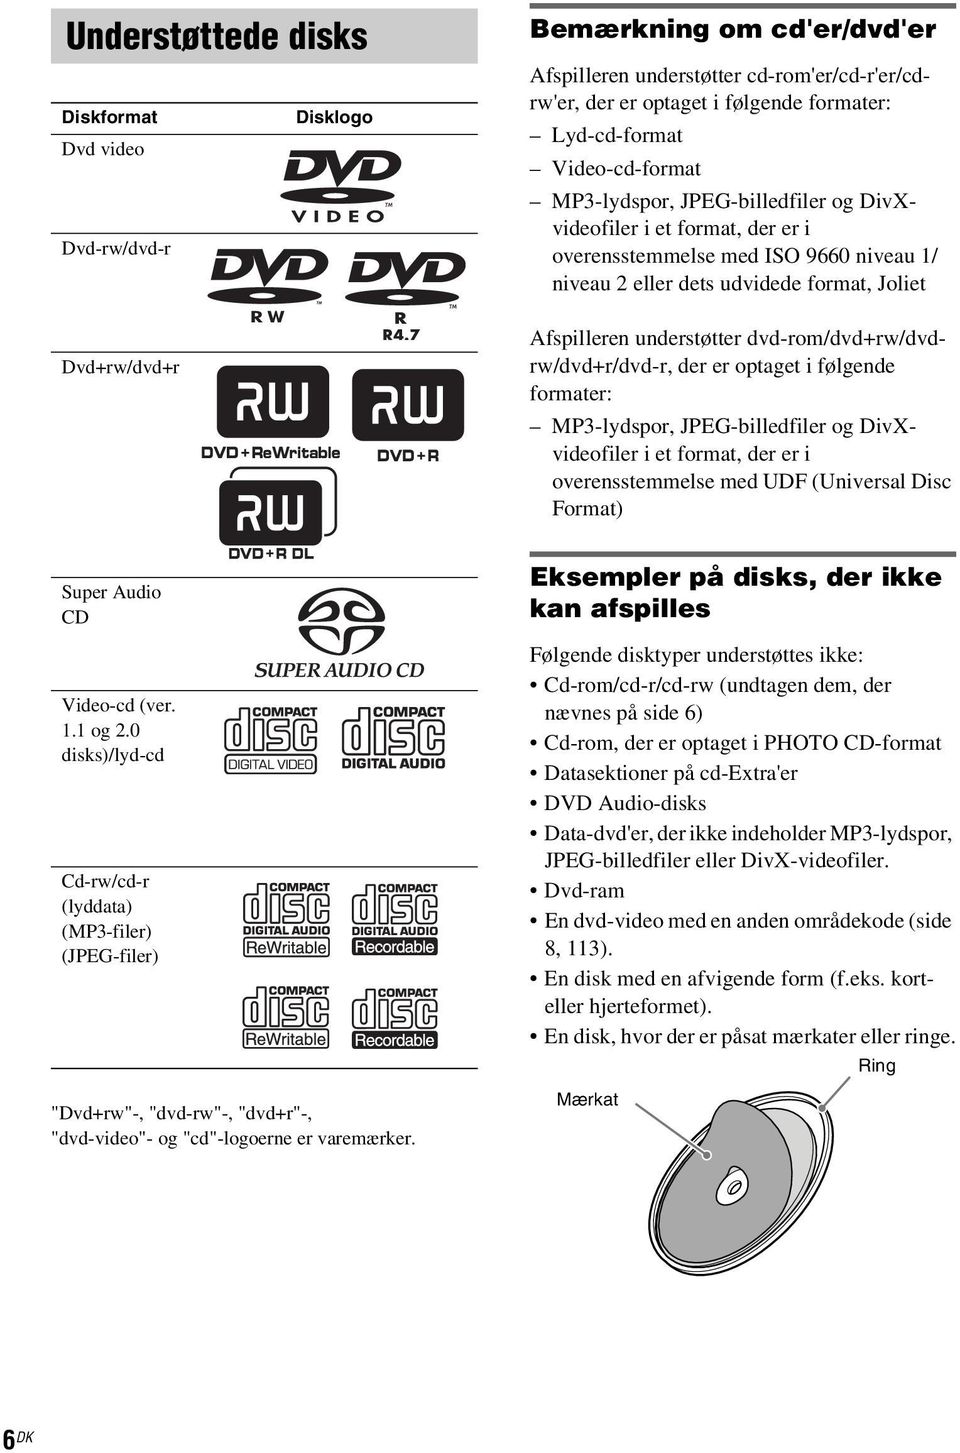 understøtter dvd-rom/dvd+rw/dvdrw/dvd+r/dvd-r, der er optaget i følgende formater: MP3-lydspor, JPEG-billedfiler og DivXvideofiler i et format, der er i overensstemmelse med UDF (Universal Disc